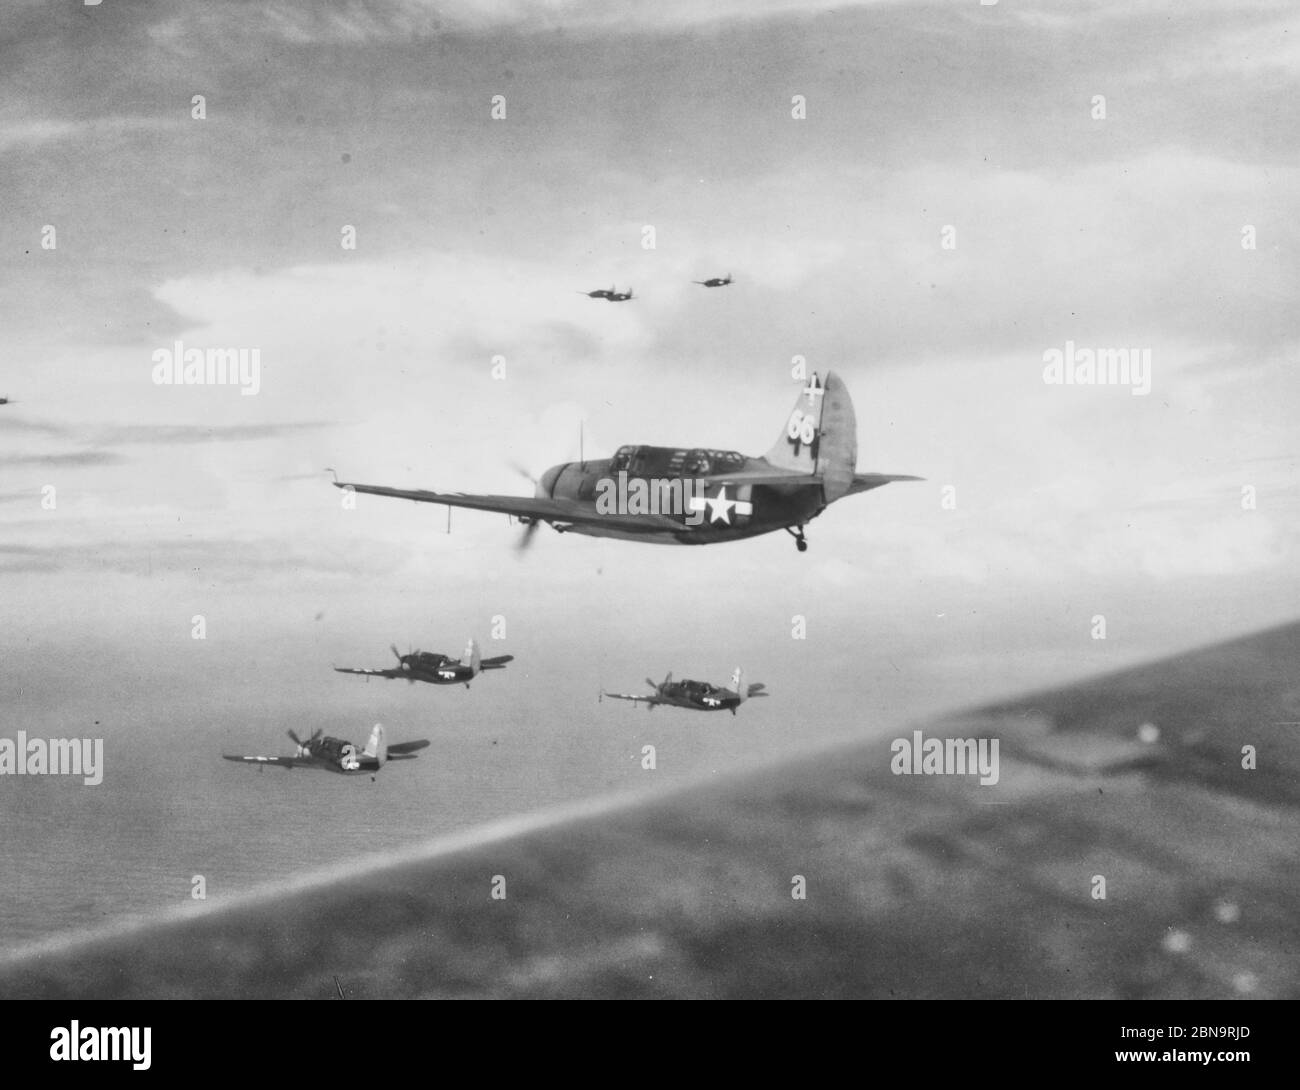 Curtiss SB2C-3 Bomber von VB-18 auf Patrouille über der philippinischen See, 15. November 1944. Sie stammen von USS Intrepid (CV-11). Beachten Sie grob neu lackierte Markierungen auf den Schwänzen. Stockfoto